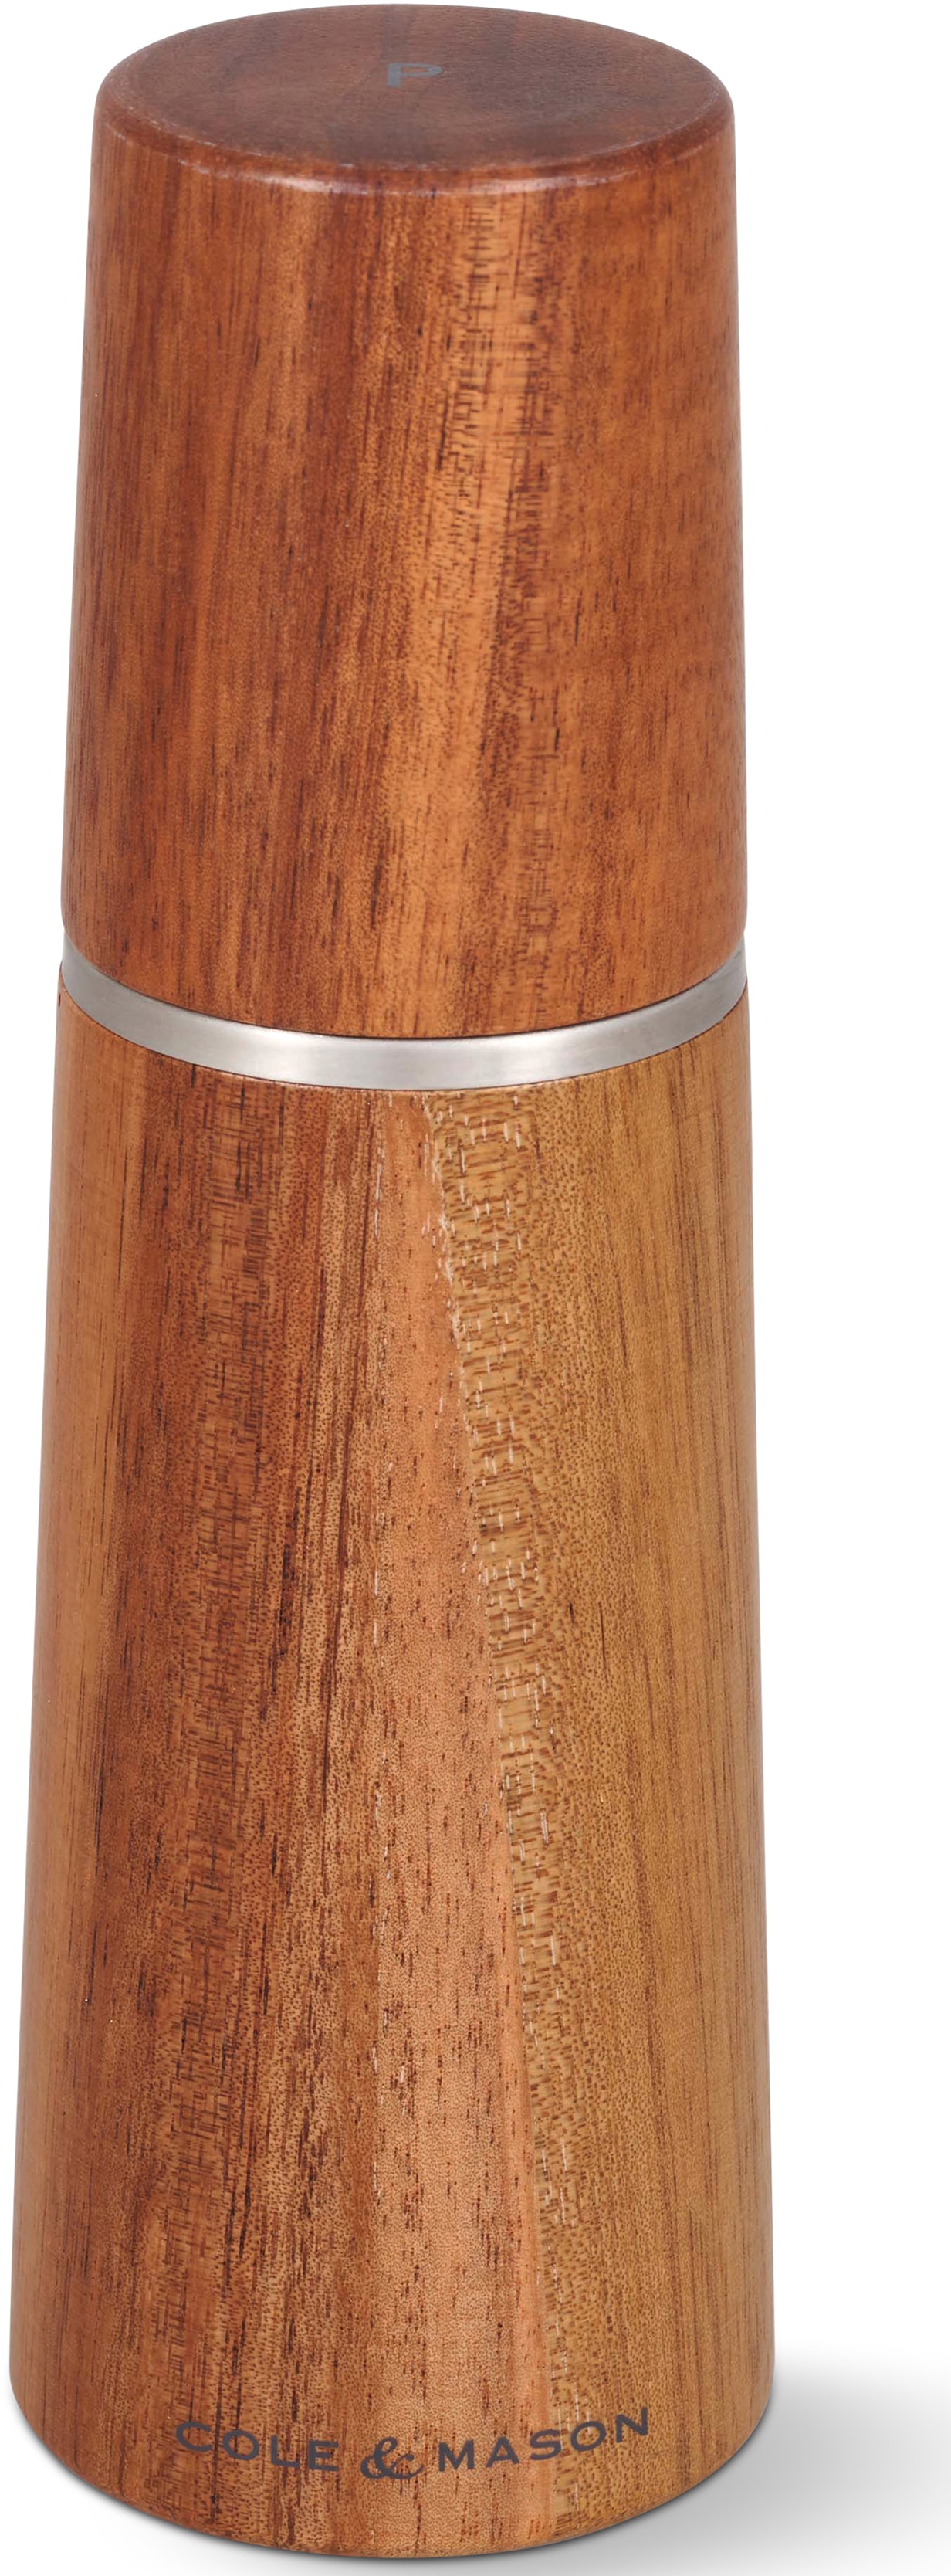 Cole & Mason Pfeffermühle "Marlow", aus hochwertigem Akazienholz, Karbonmahlwerk von Cole & Mason